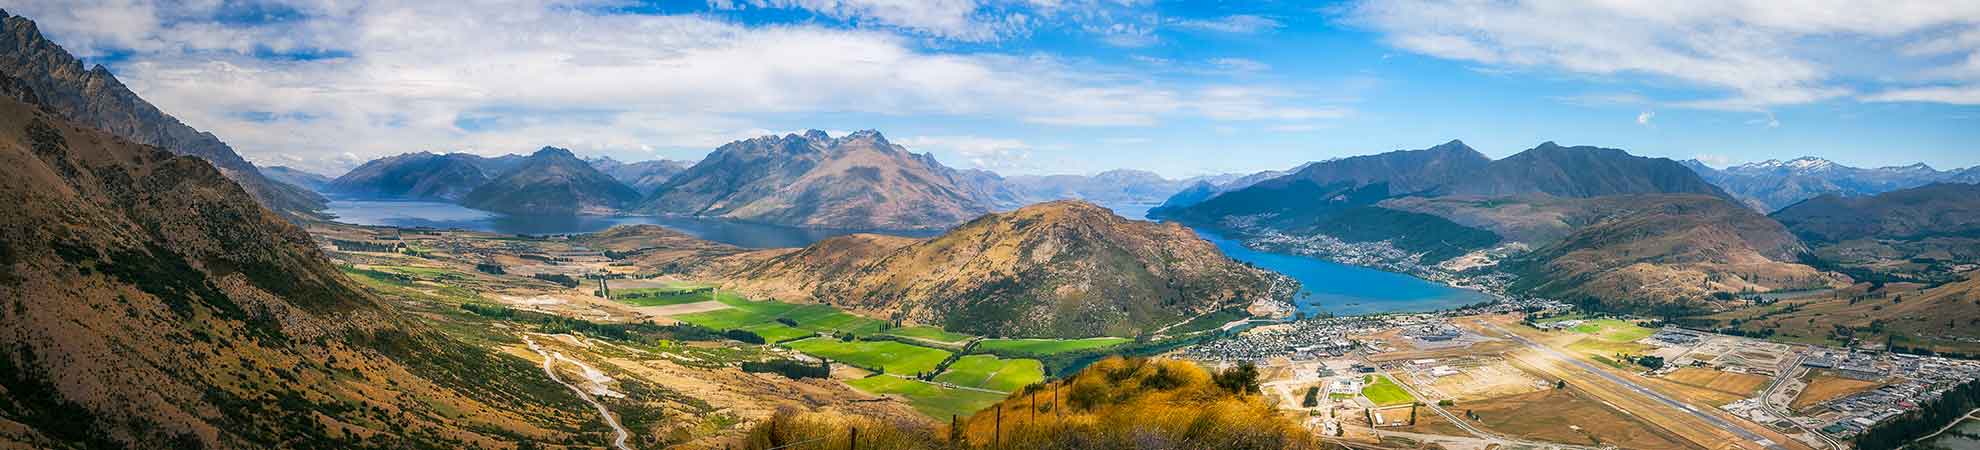 Passer facilement les douanes en Nouvelle-Zélande pour profiter d'un séjour agréable dans le pays de kiwis